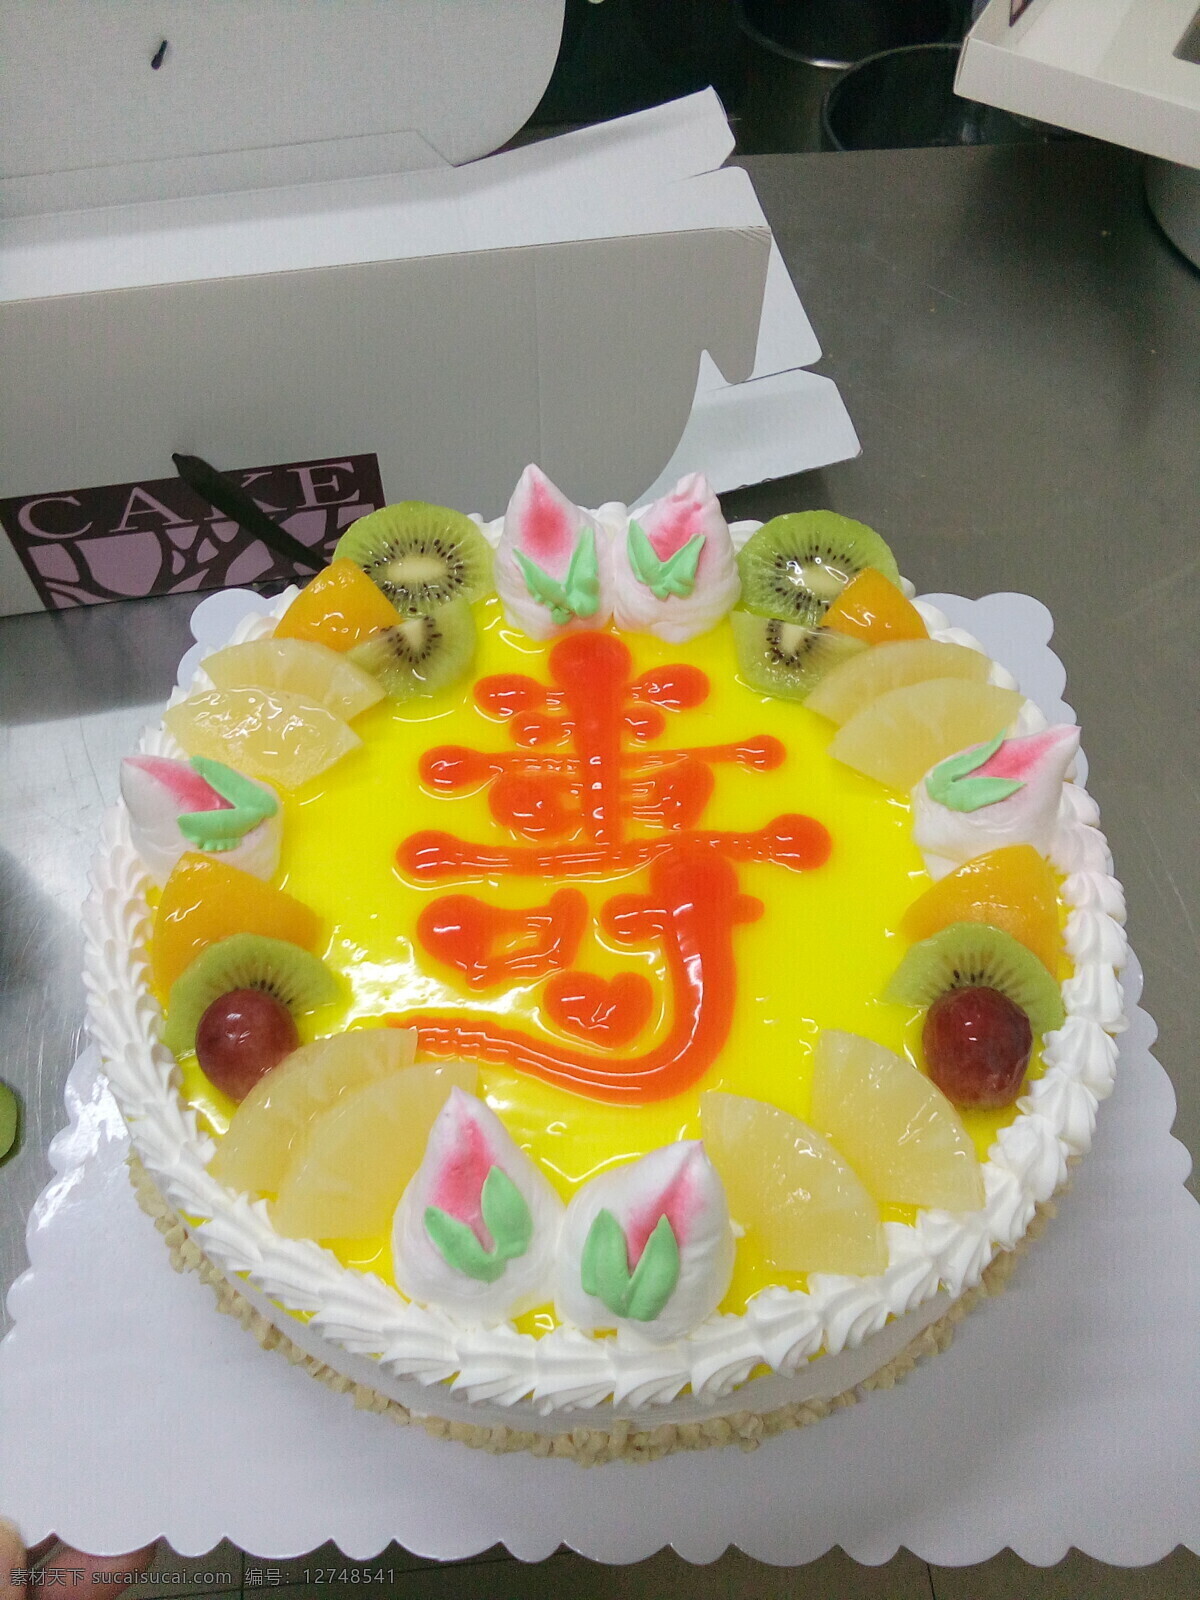 过寿生日蛋糕 寿字生日蛋糕 水果蛋糕 寿桃蛋糕 柠檬酱蛋糕 生日蛋糕 餐饮美食 西餐美食